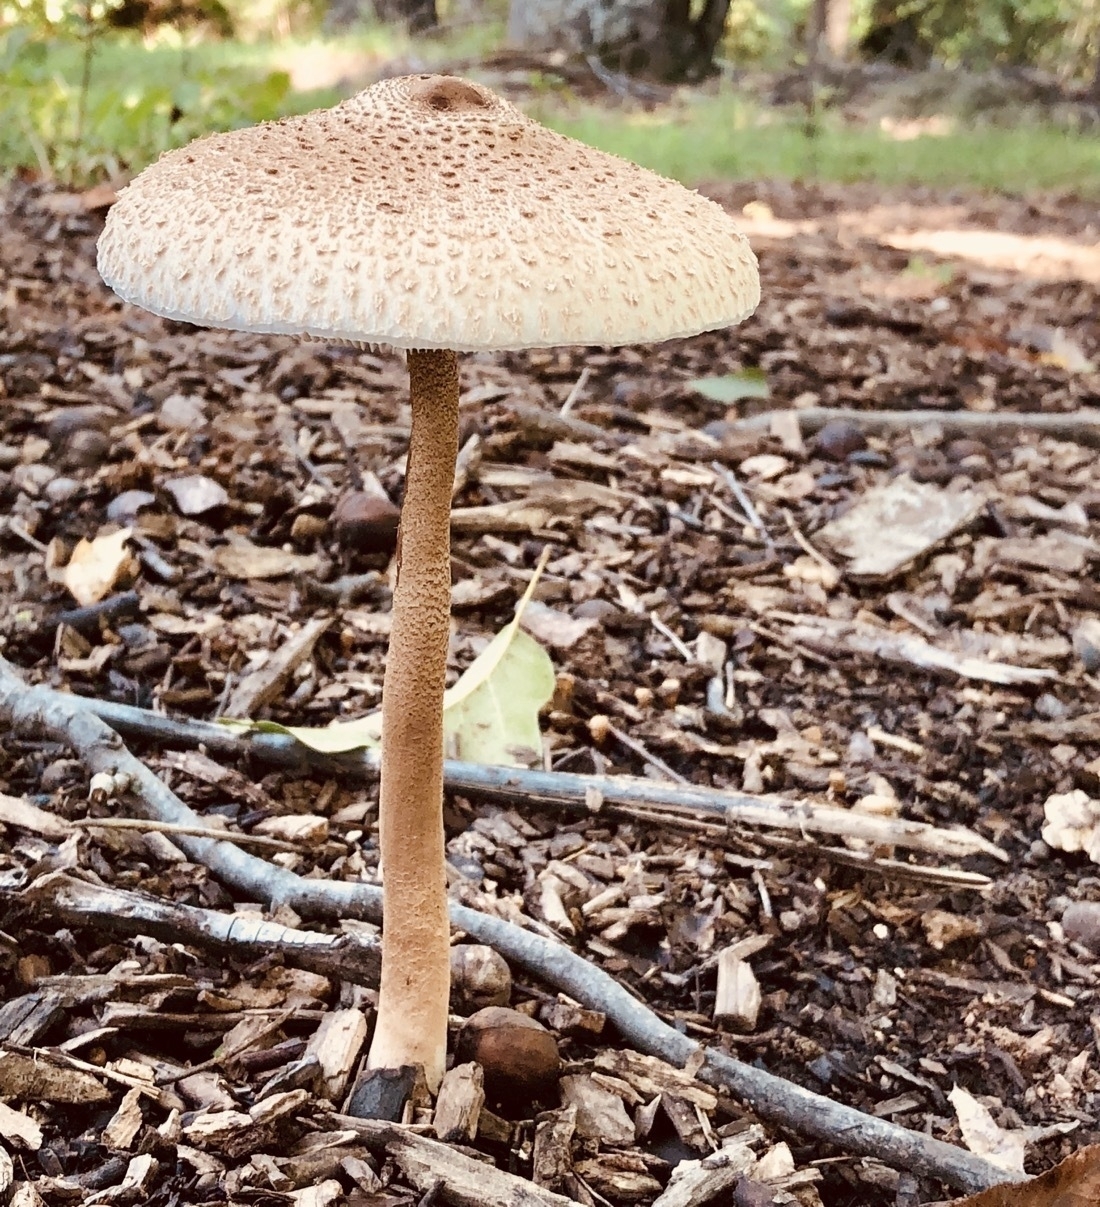 a white, cream colored mushroom